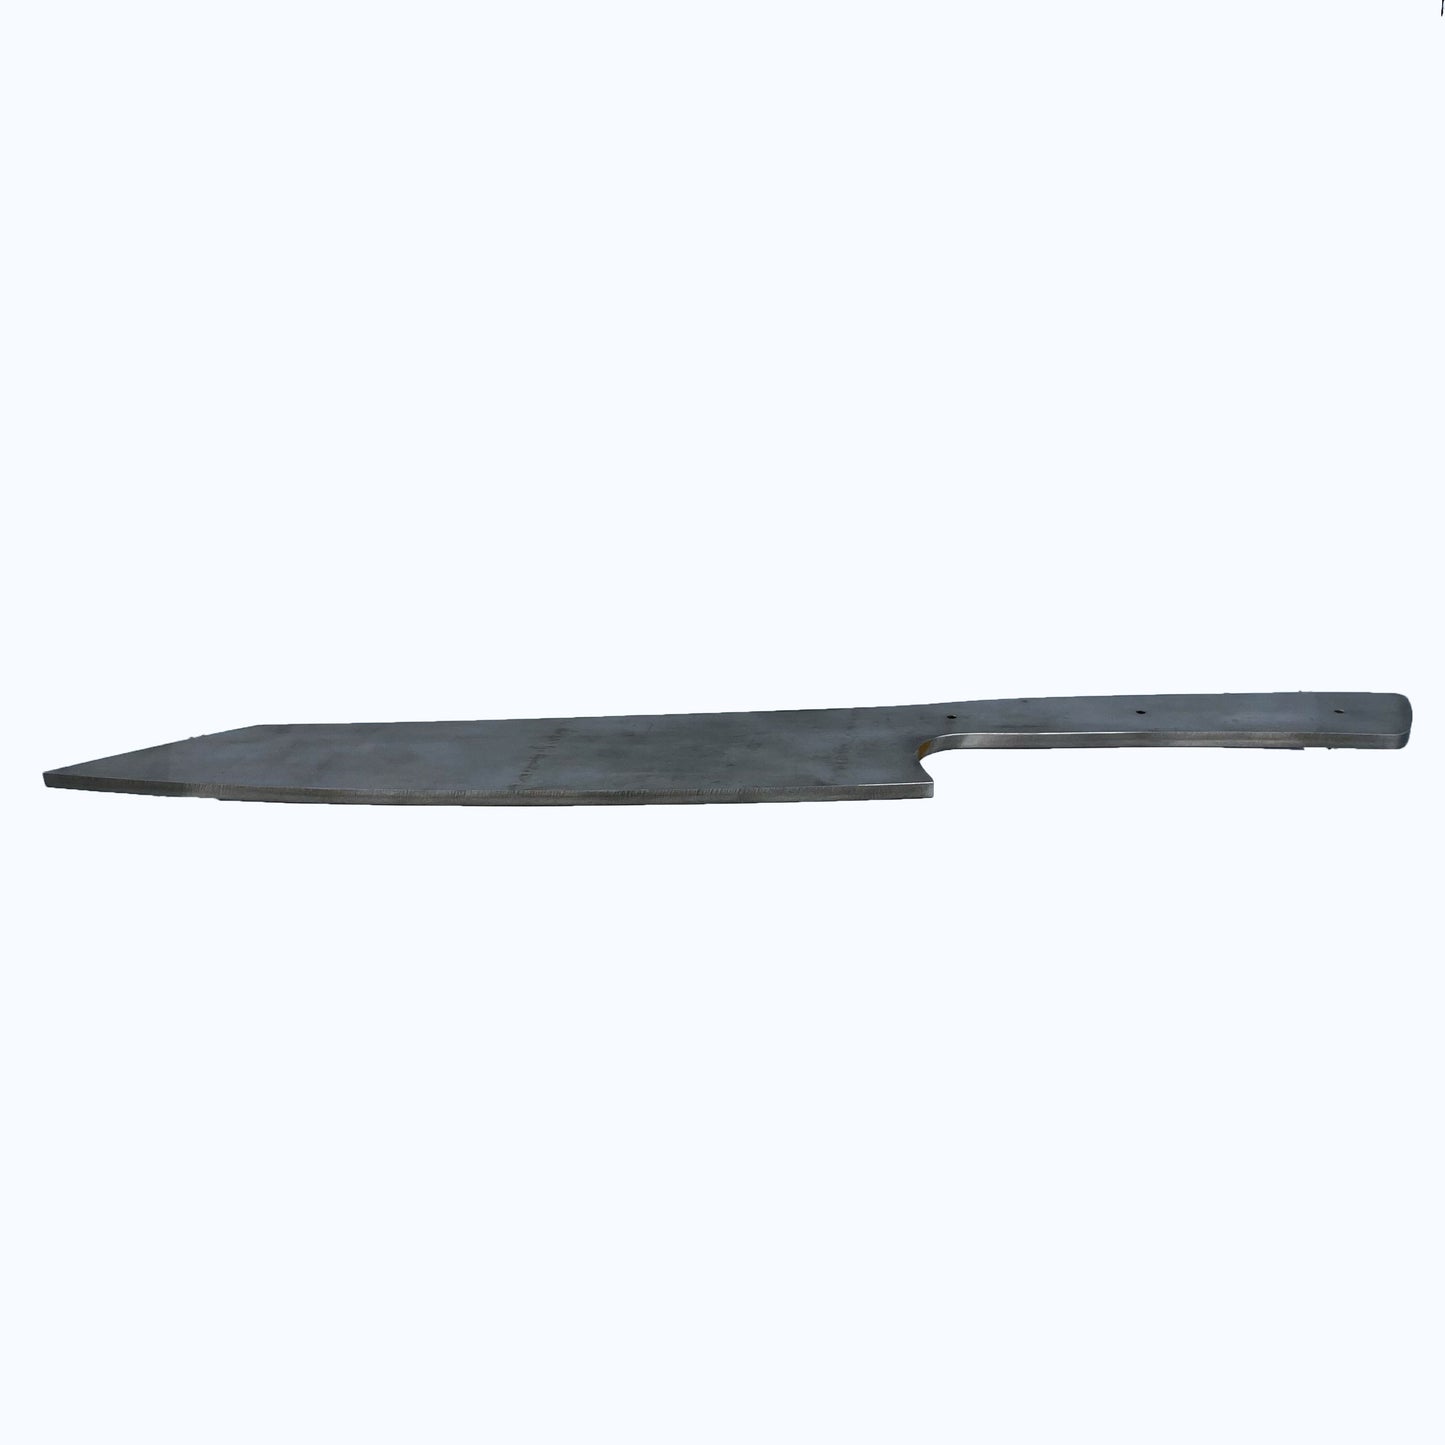 8.5 Inch Seax Knife - Patrick Adair Supplies